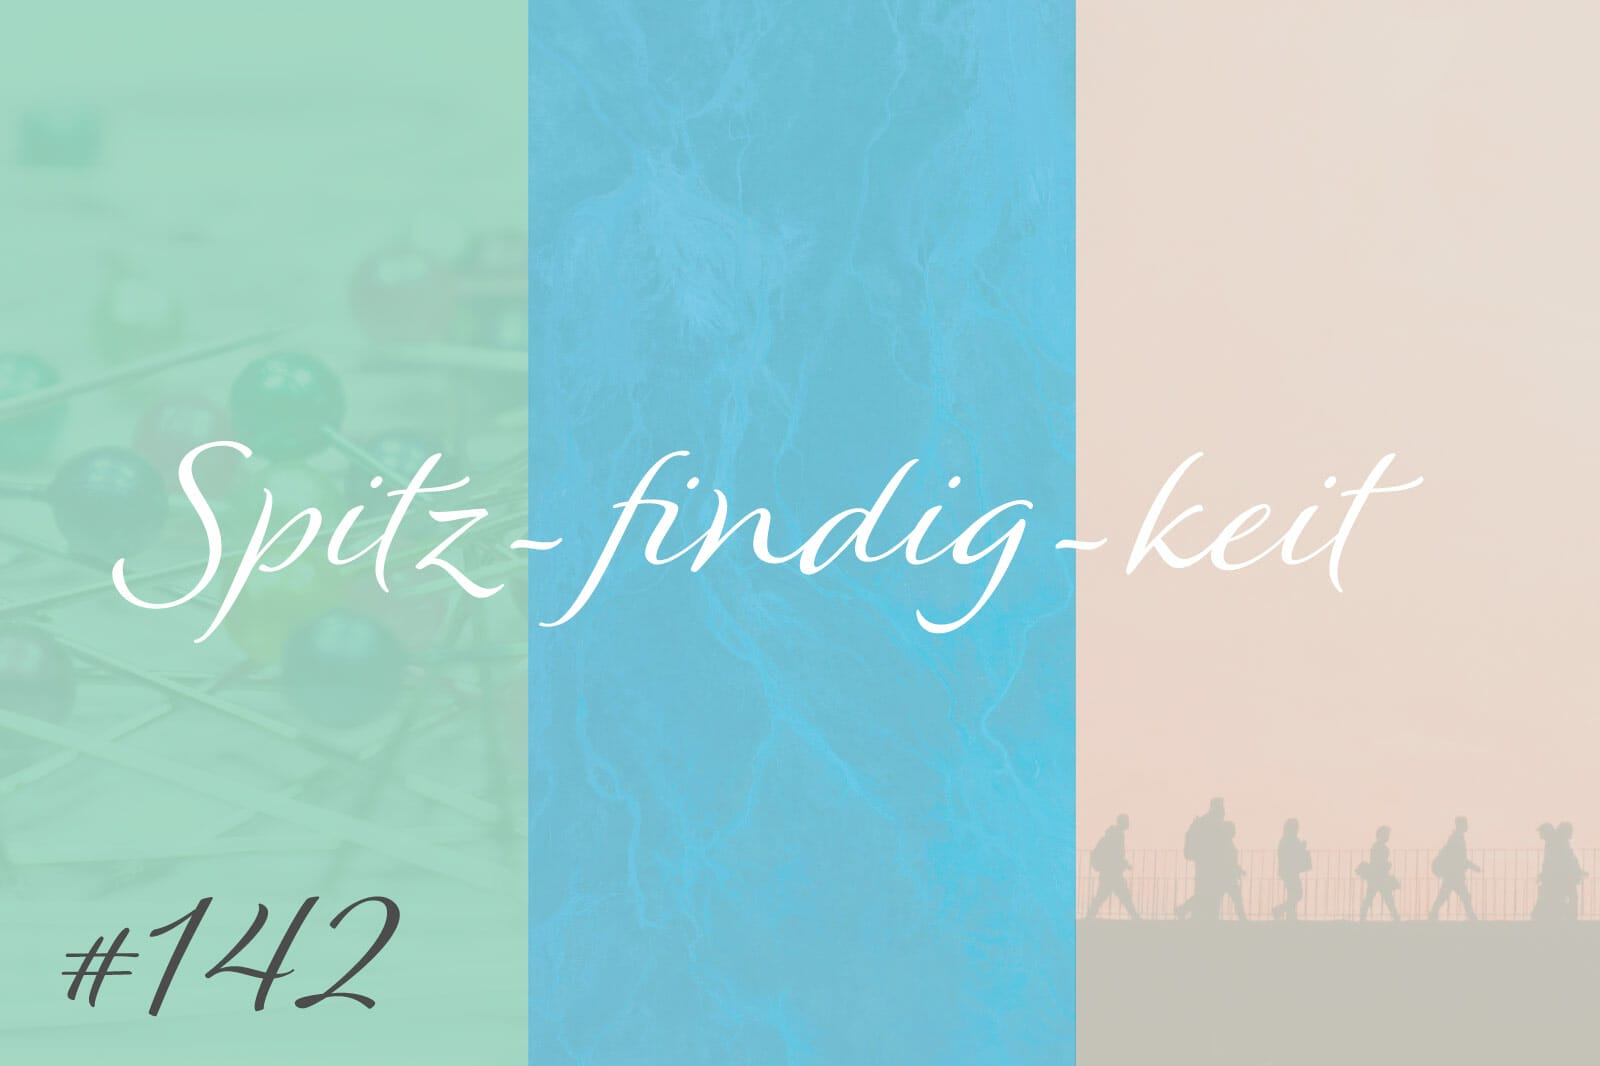 Spitz-findig-keit #142